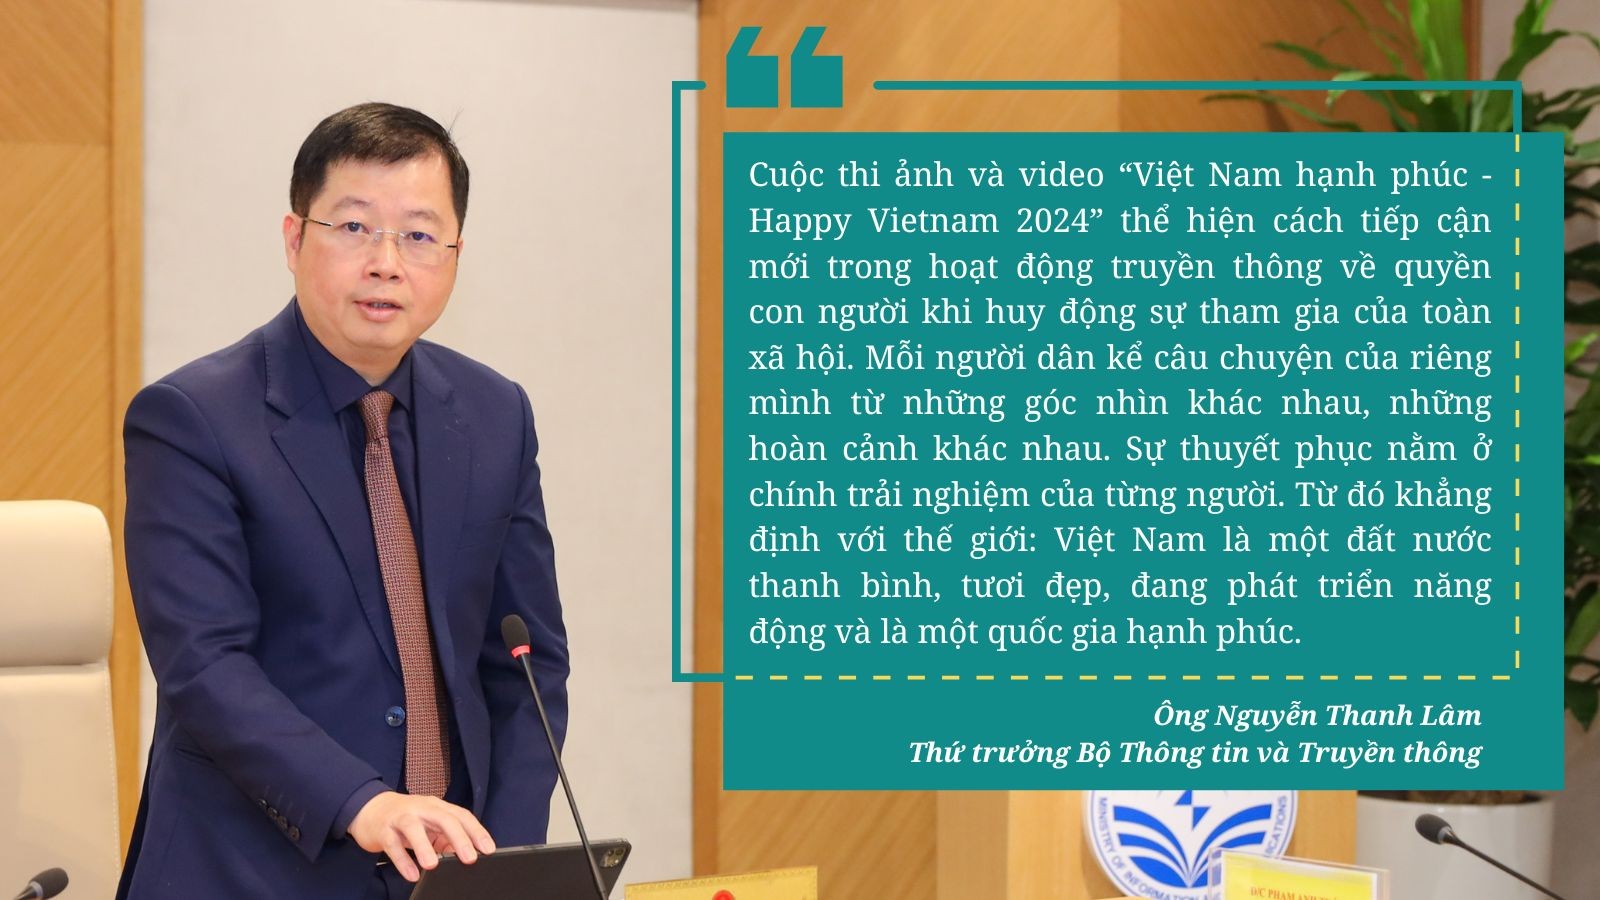 Phát động cuộc thi ảnh, video “Việt Nam hạnh phúc - Happy Vietnam 2024”